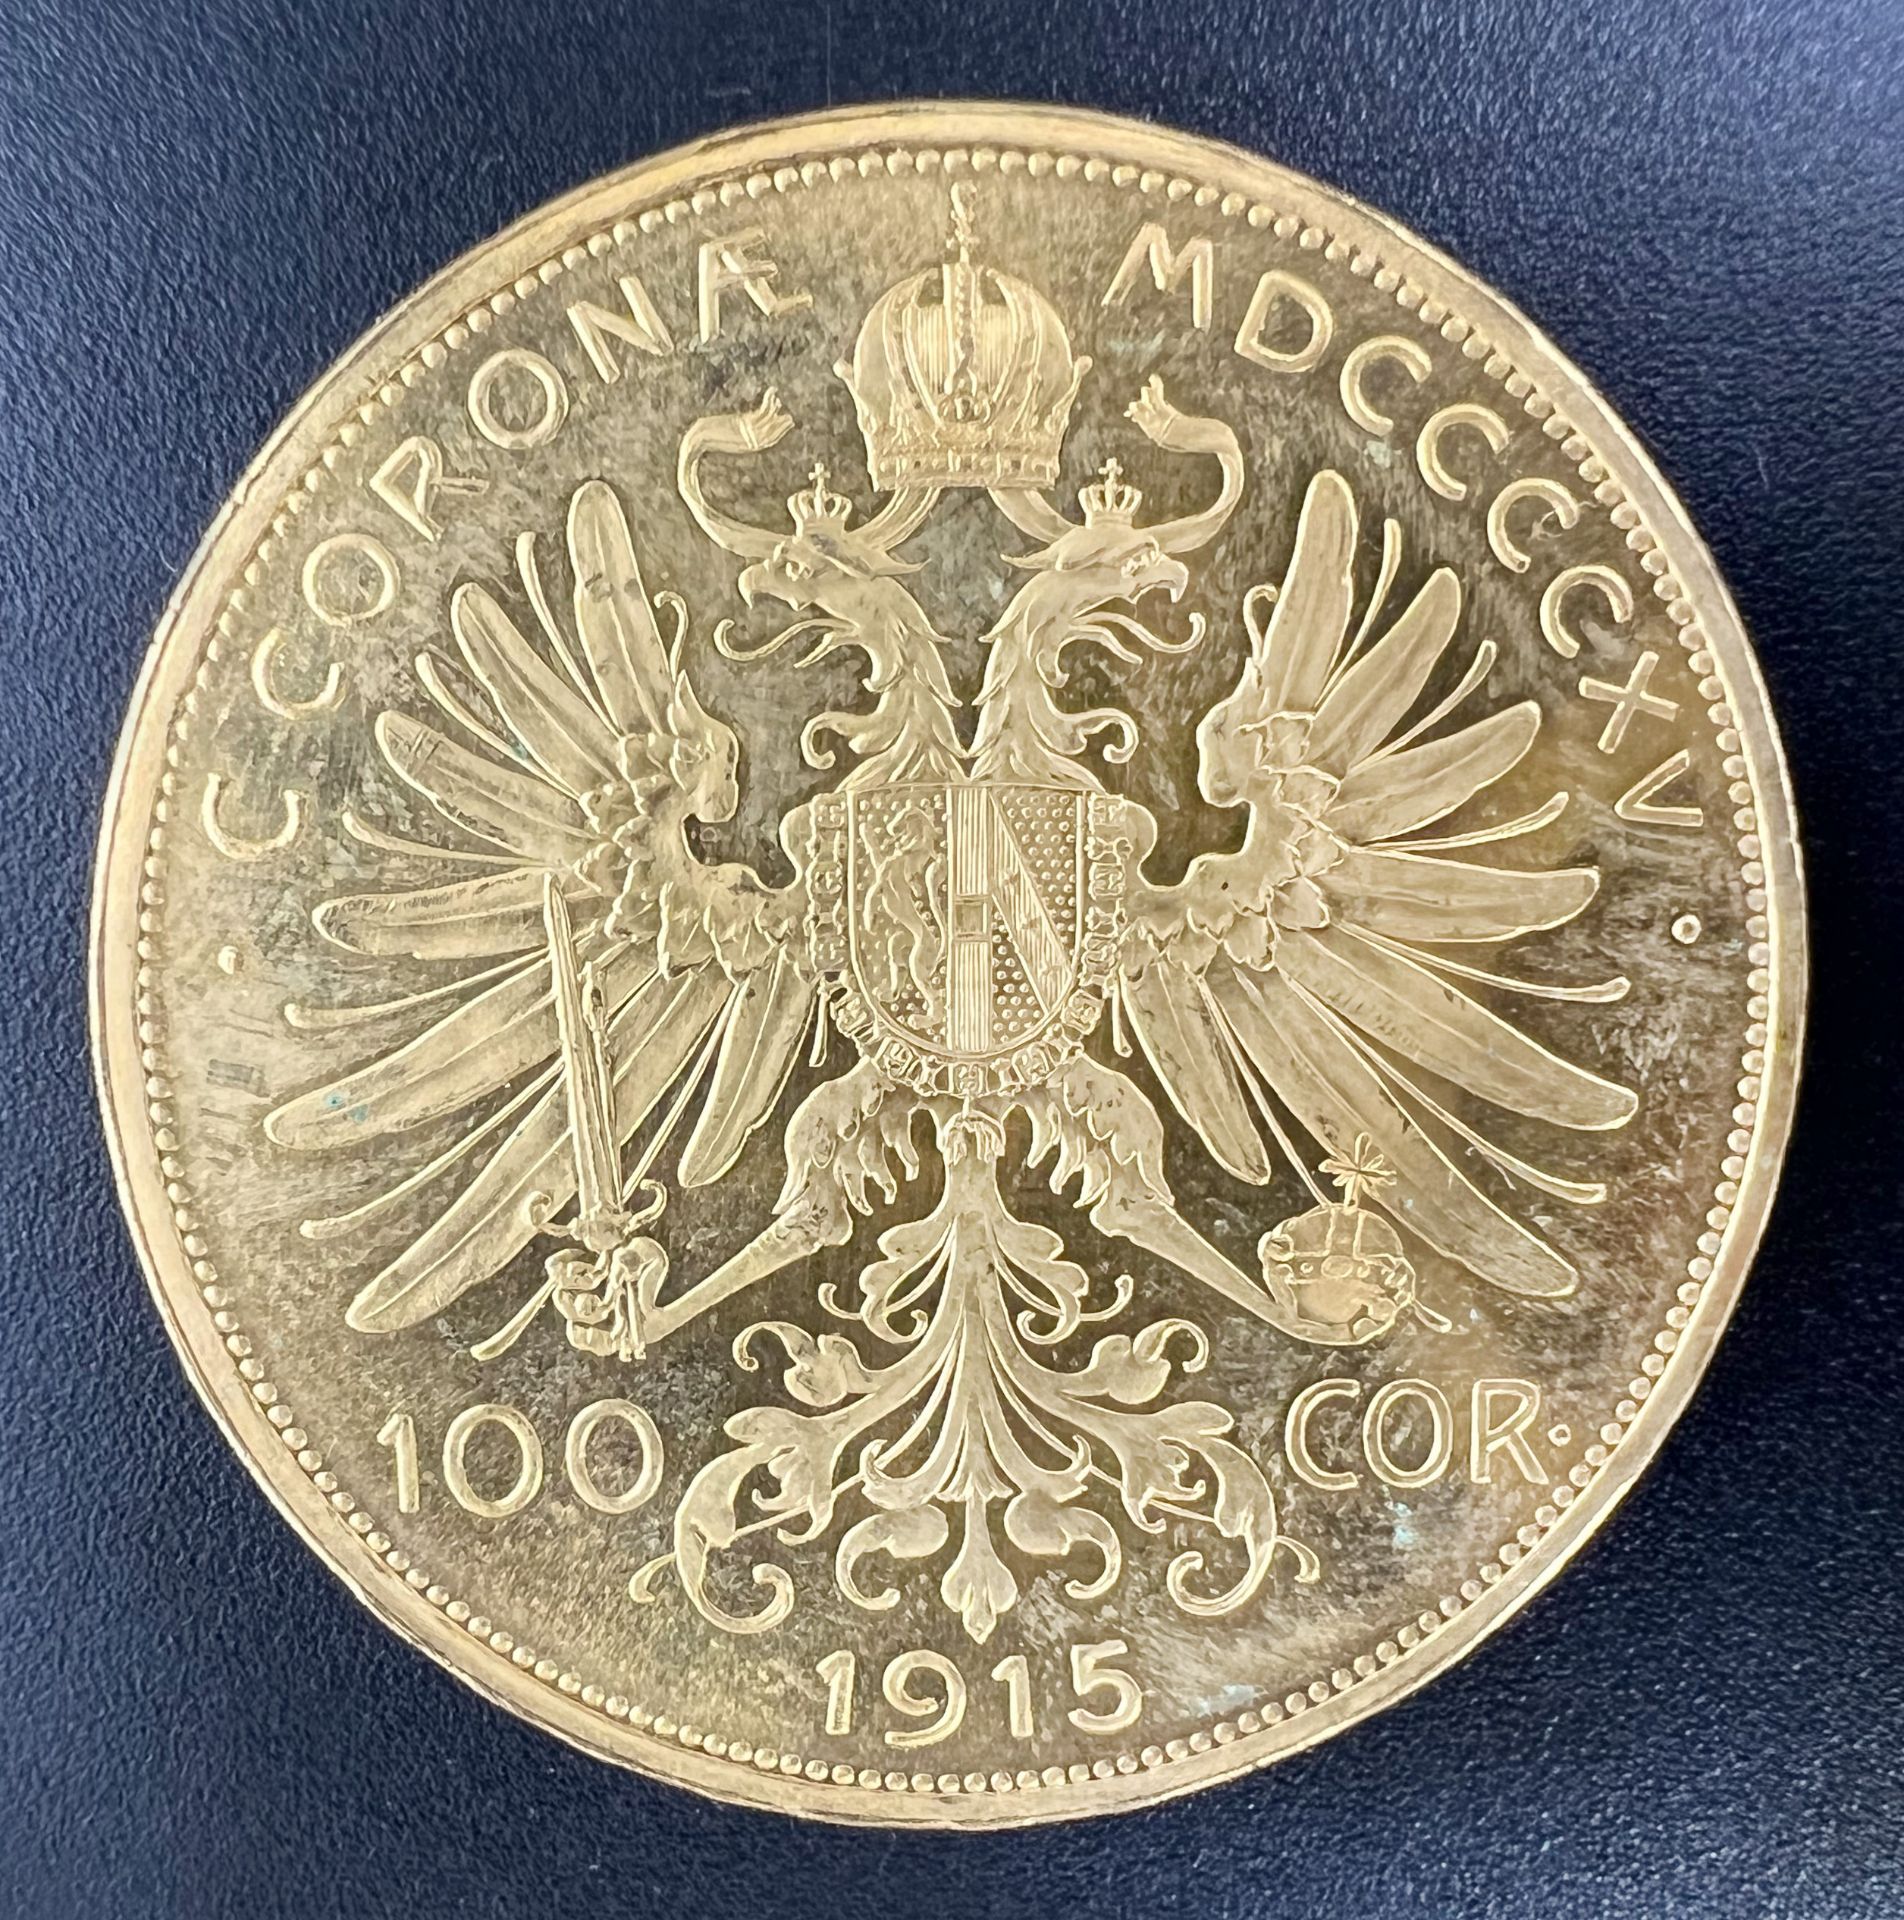 Goldmünze 100 Kronen "Franz Joseph I.". Österreich 1915. 900 Gold. - Bild 3 aus 6